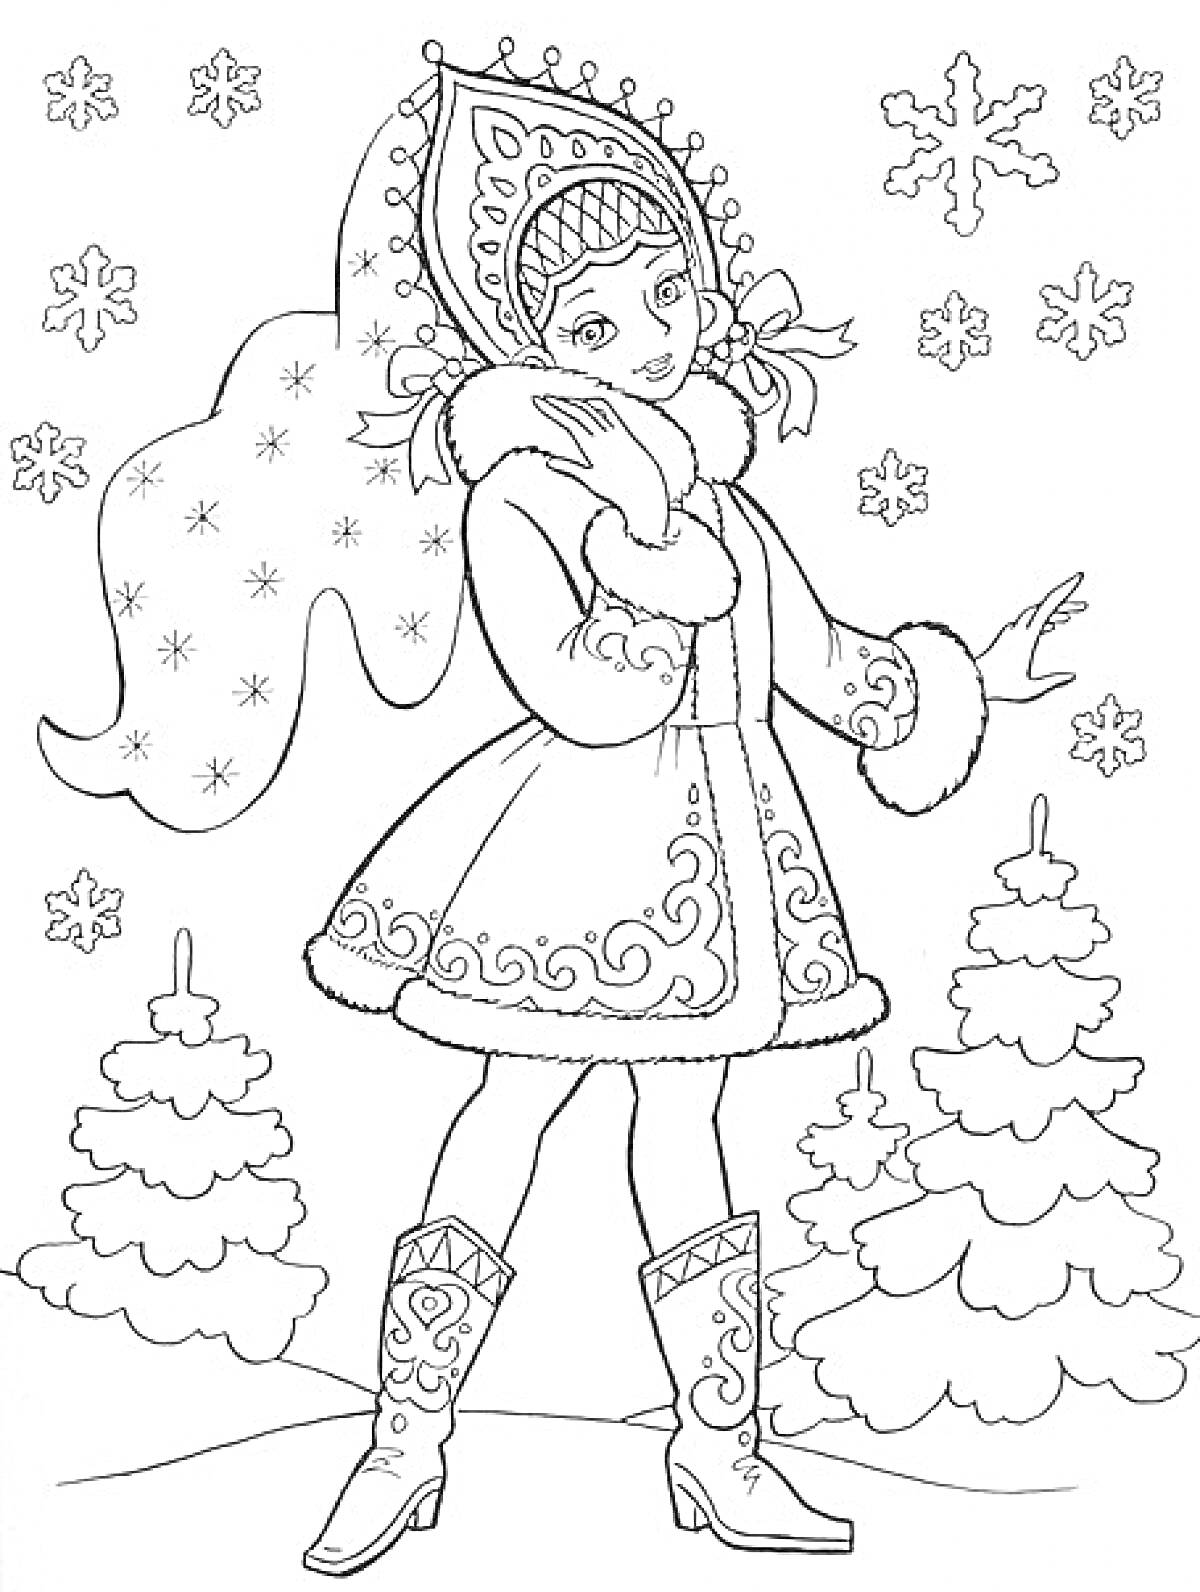 Раскраска Снегурочка с узором на шубе и кокошнике, новогодние елки и снежинки